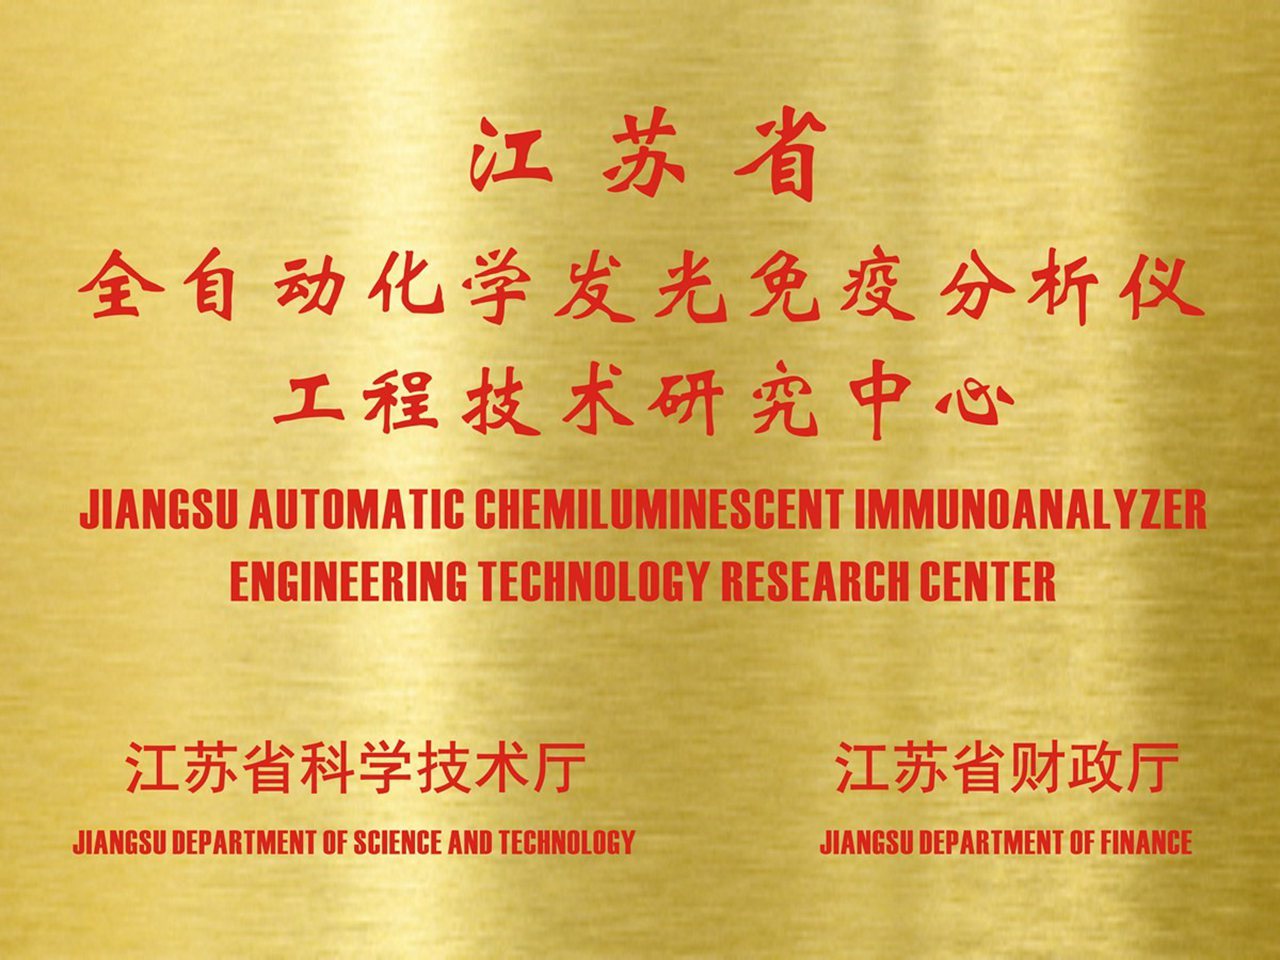 苏州长光华医生物医学工程有限公司获得“江苏省全自动化学发光免疫分析仪工程技术研究中心”的认定